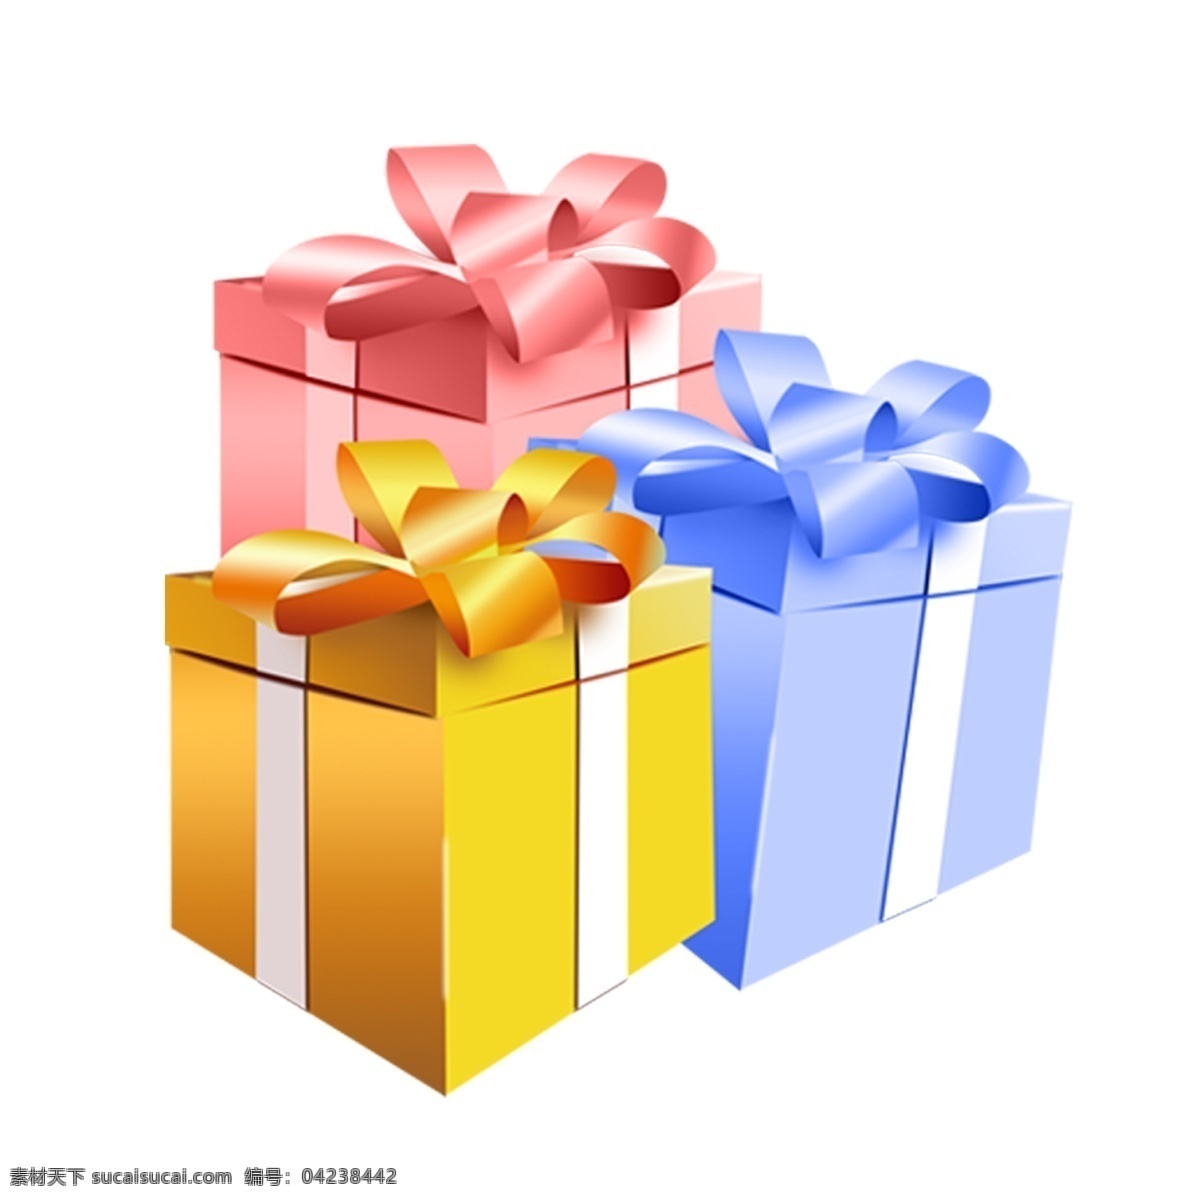 礼品盒 红色礼品盒 黄色礼品盒 蓝色礼品盒 卡通礼品盒